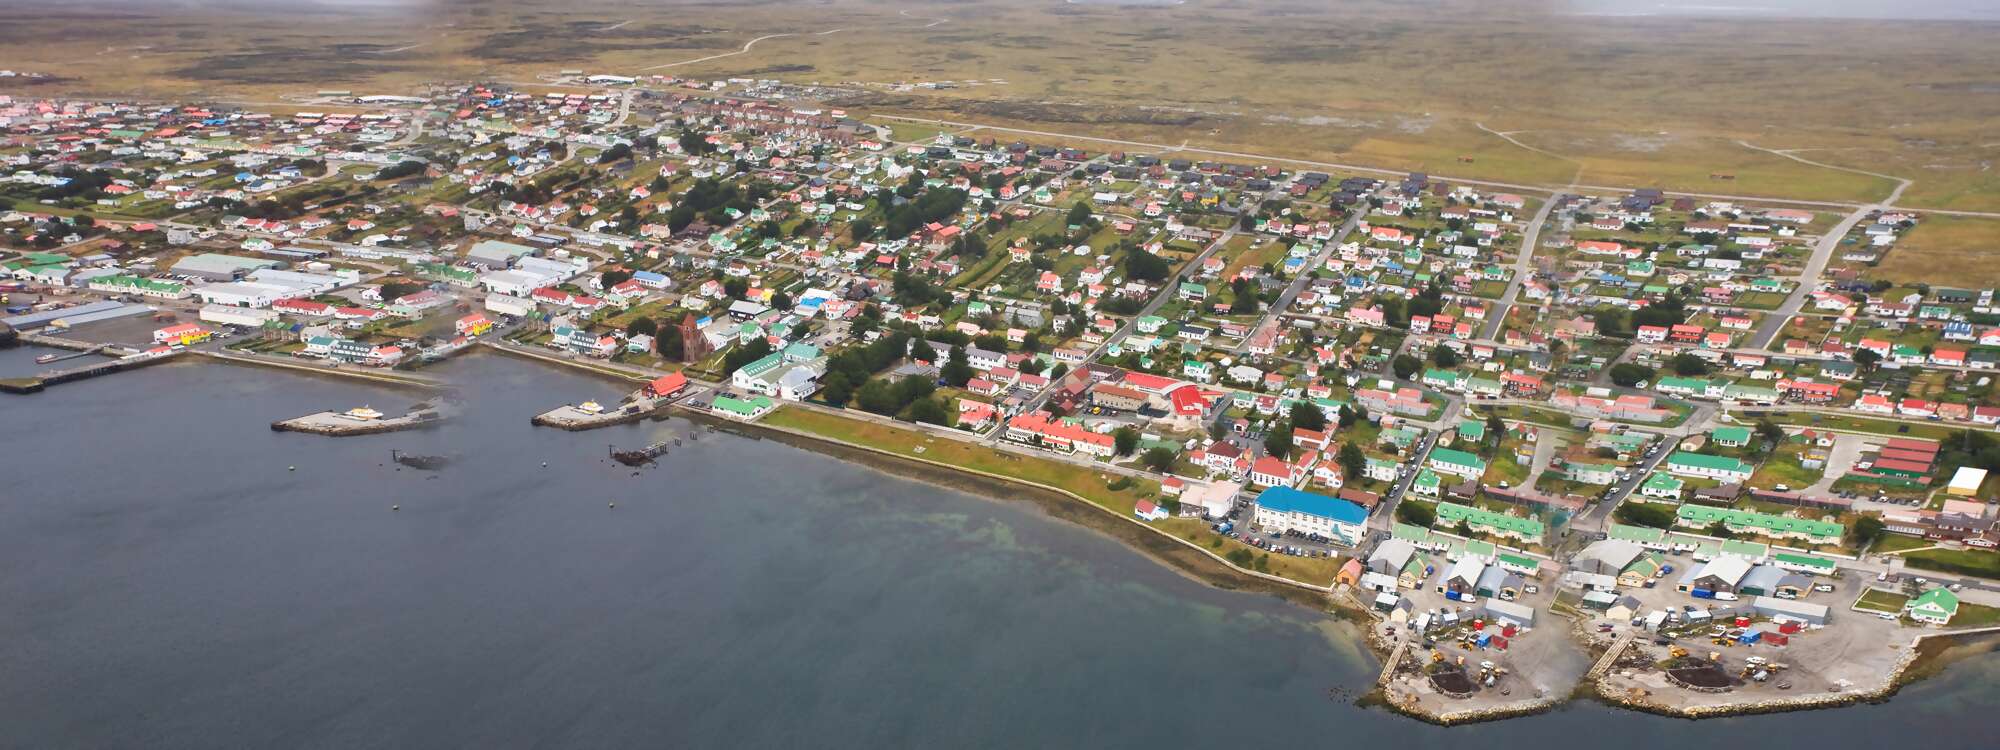 Luftaufnahme von der Hauptstadt Stanley auf den Falklandinseln in der Region Antarktis